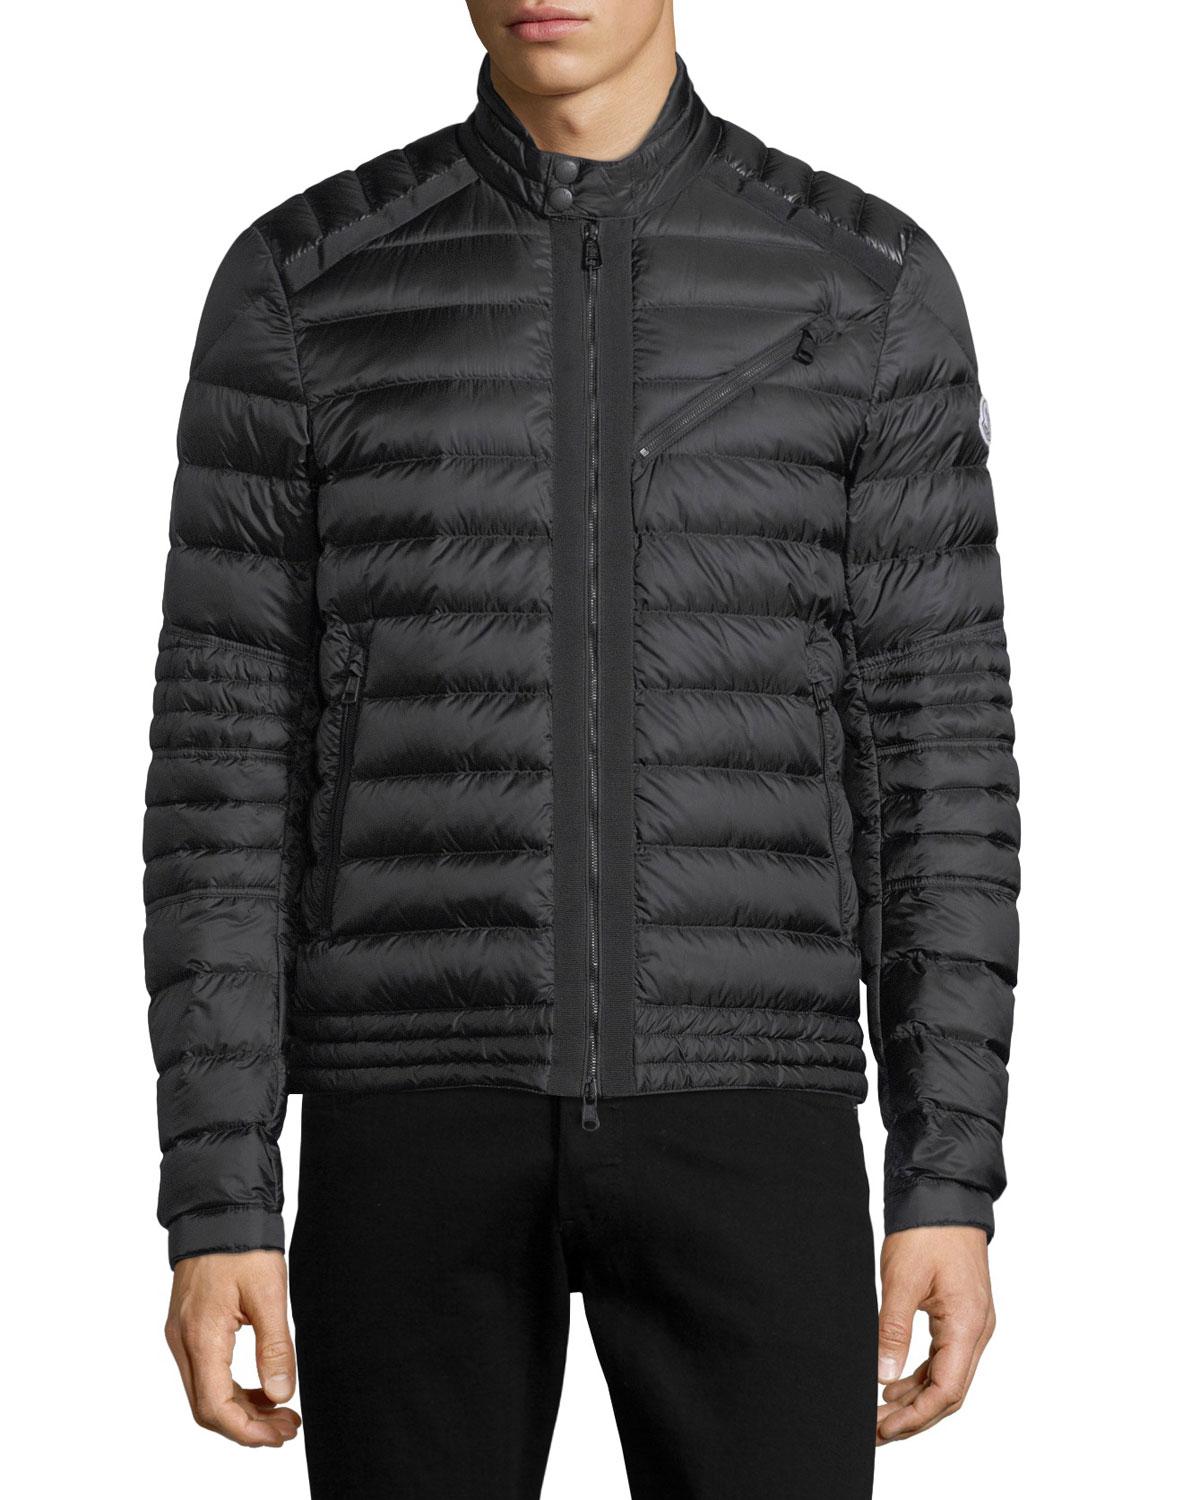 Lyst - Moncler Royat Puffer Jacket in Black for Men